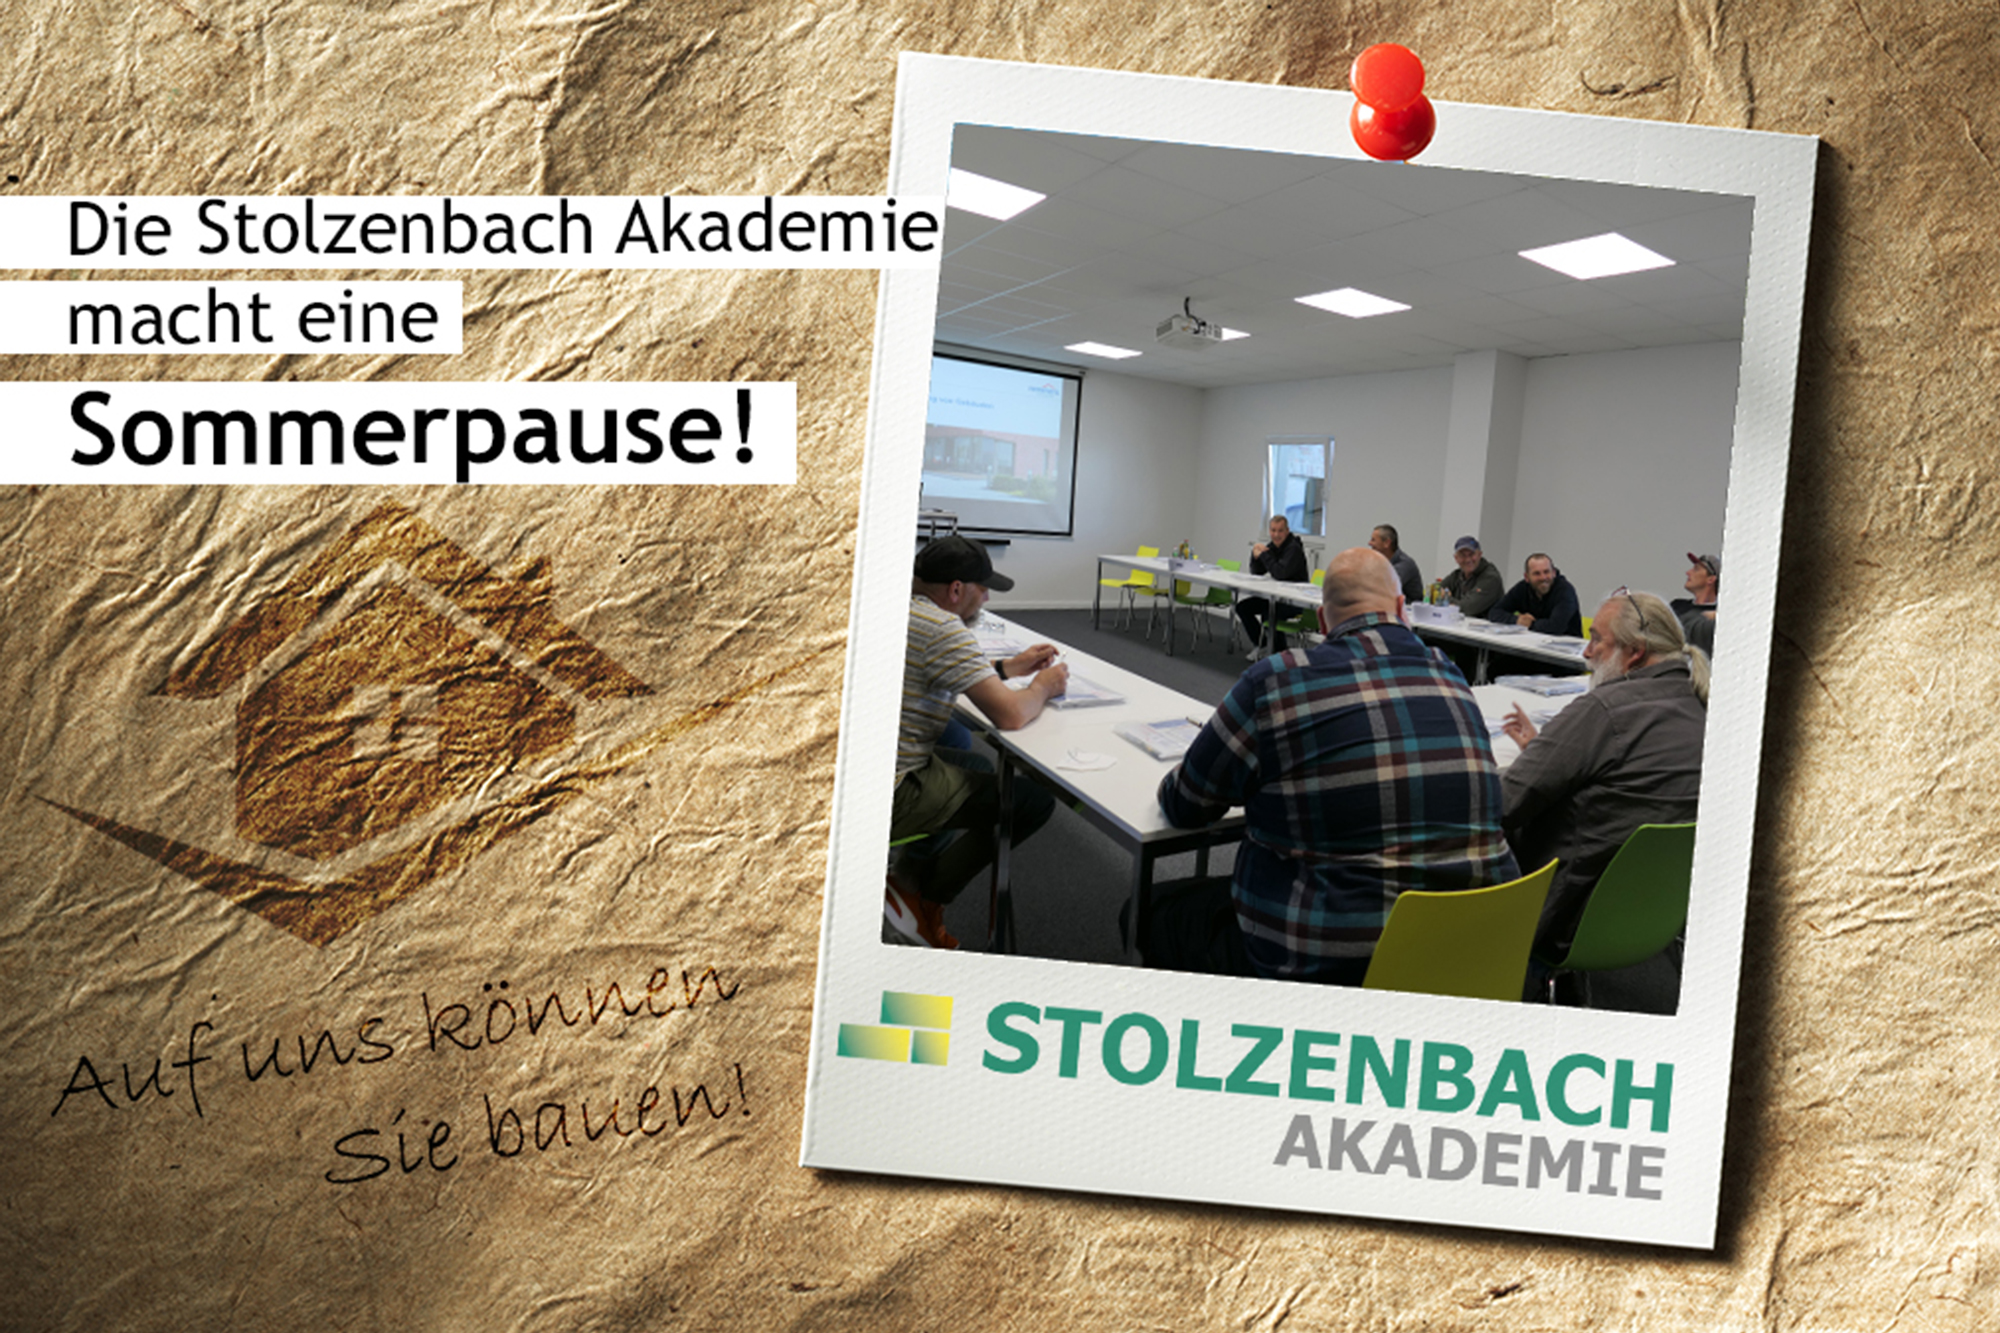 Die Stolzenbach Akademie macht eine Sommerpause